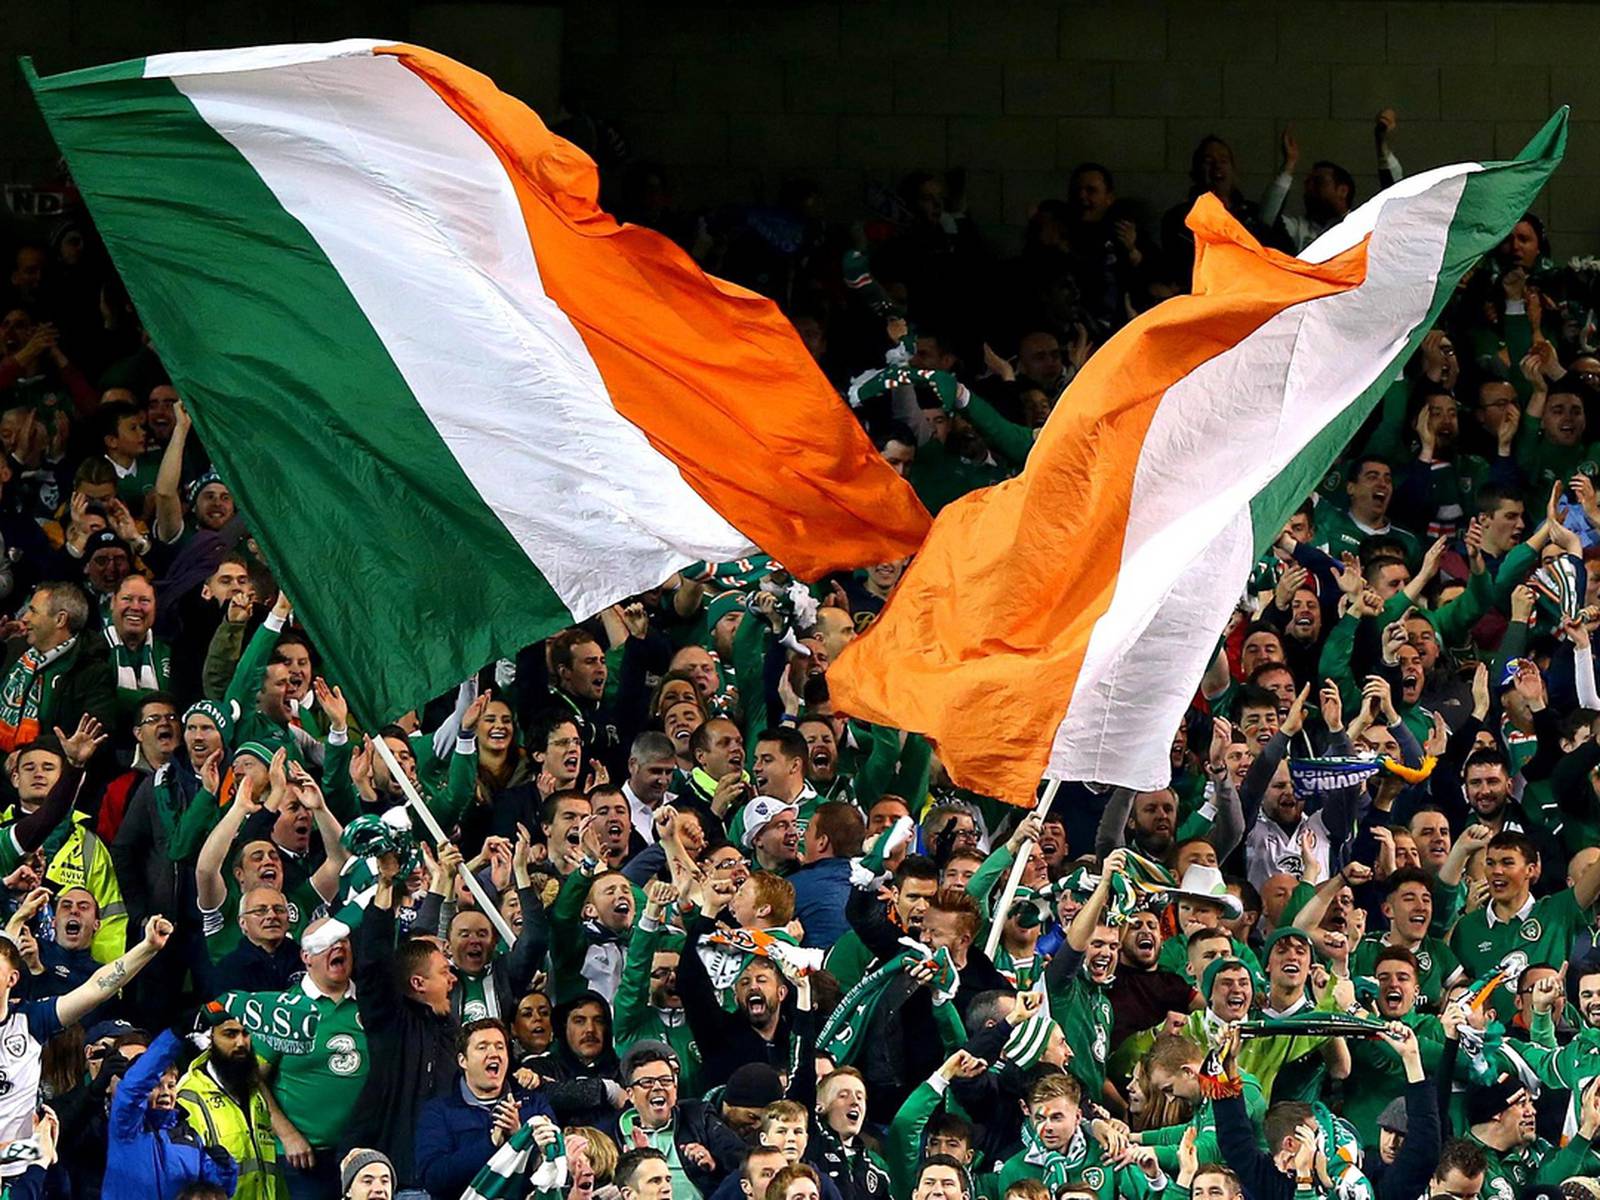 Up to 1,000 Irish may refused in Copenhagen – The Irish Times